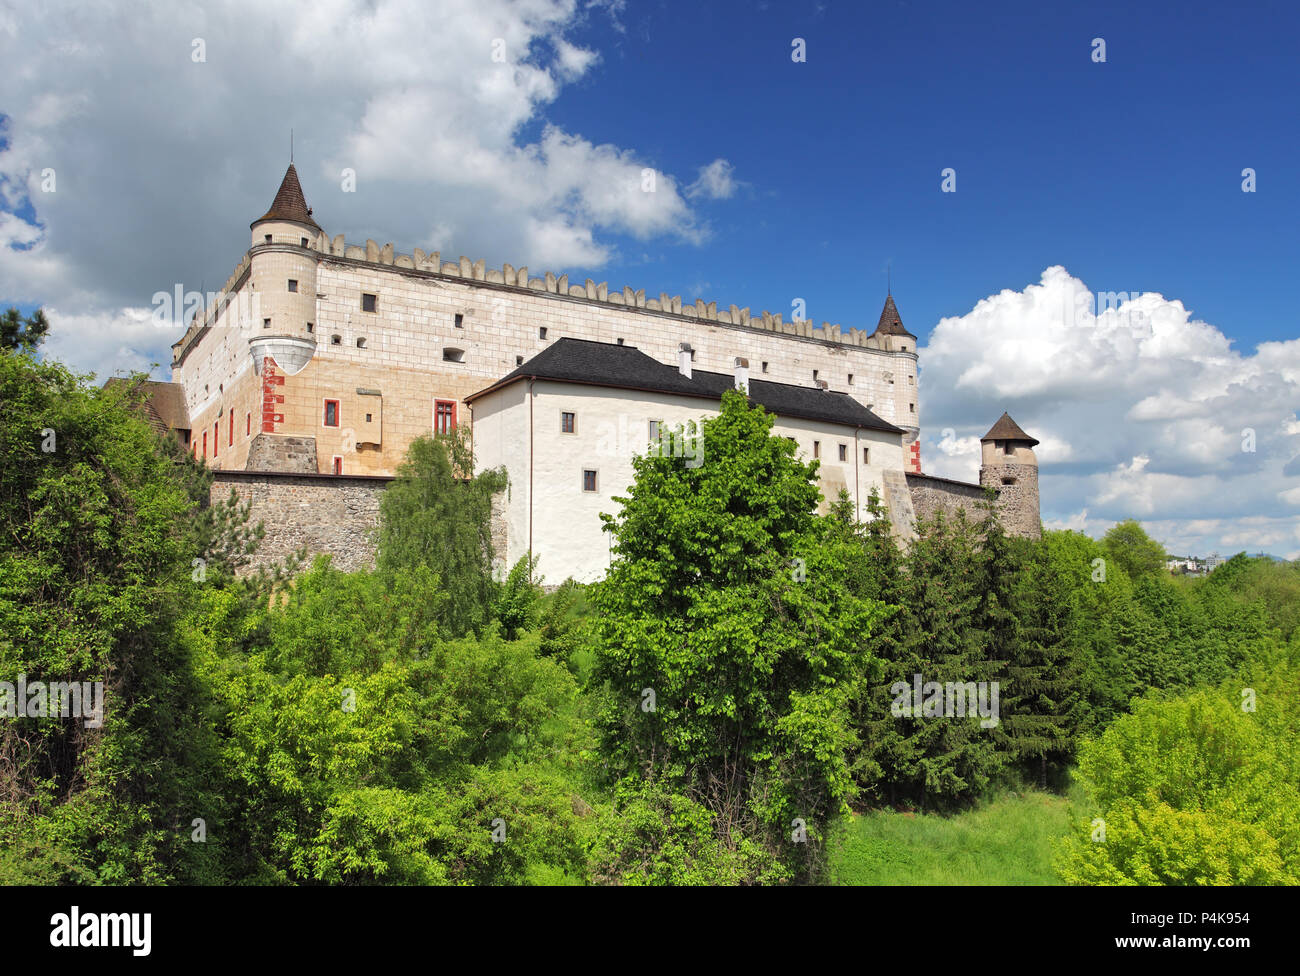 Slovakia - Zvolen castle Stock Photo